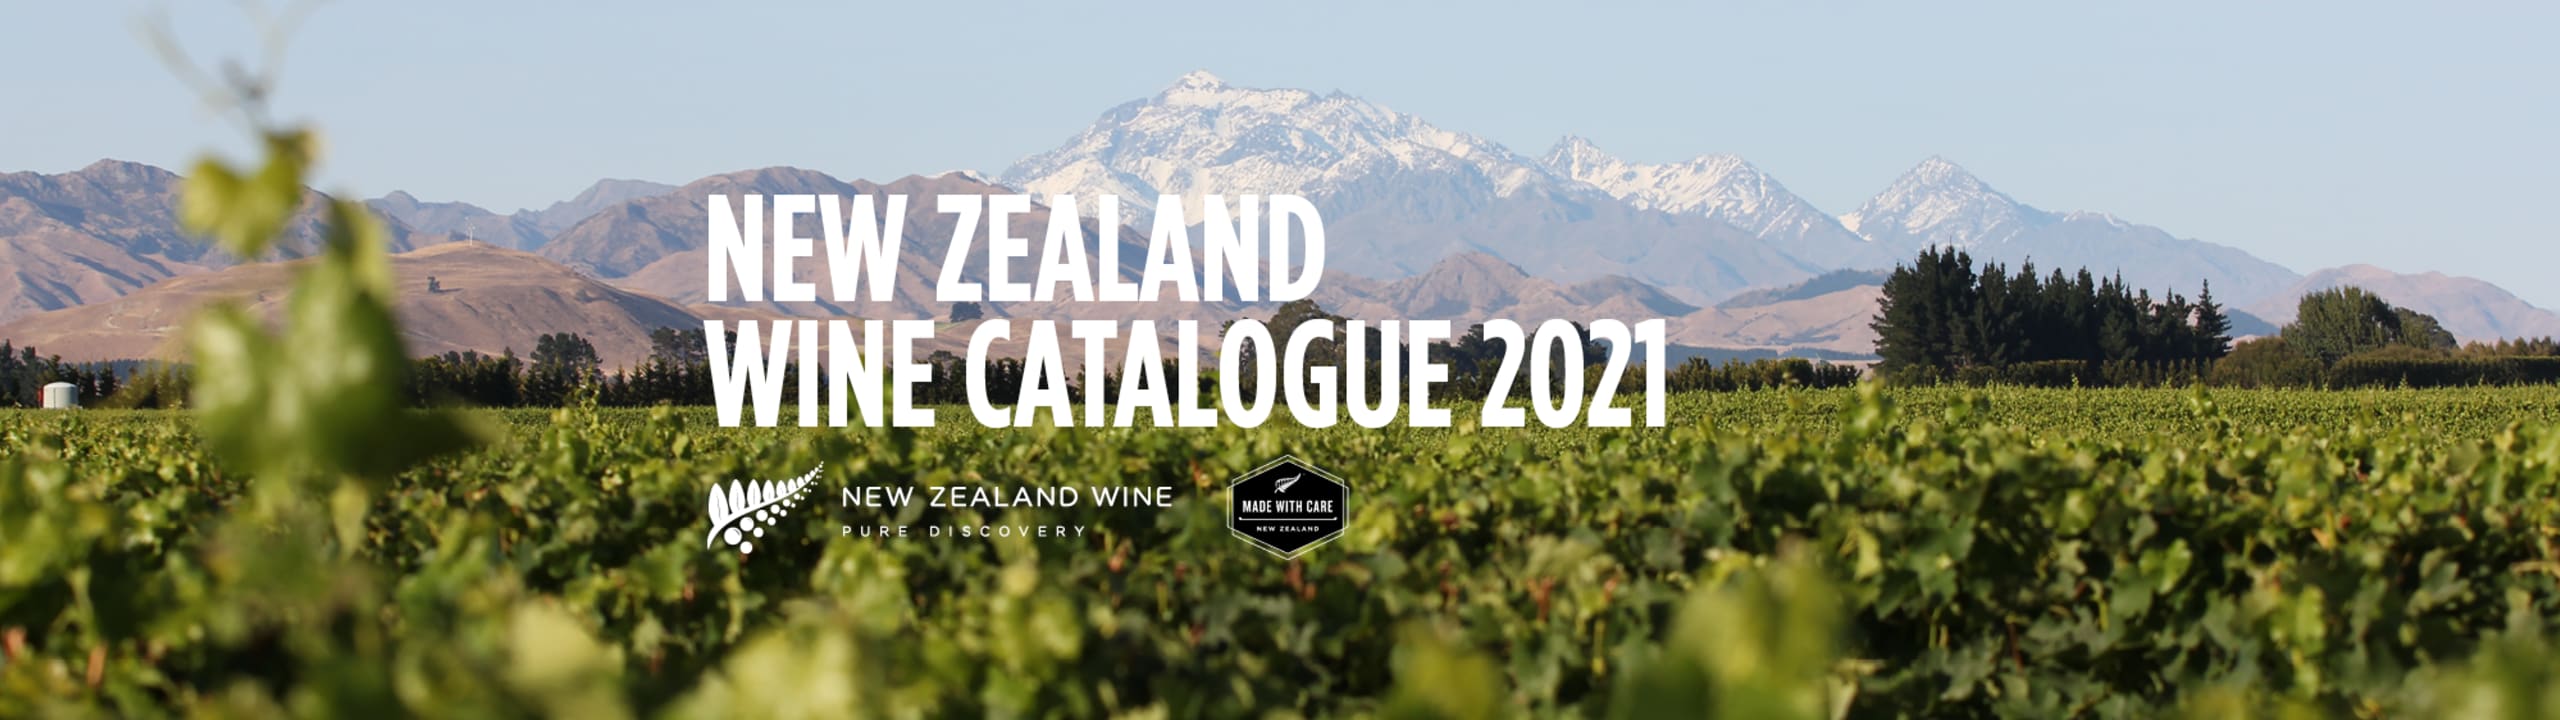 NZ Organic Wine Week